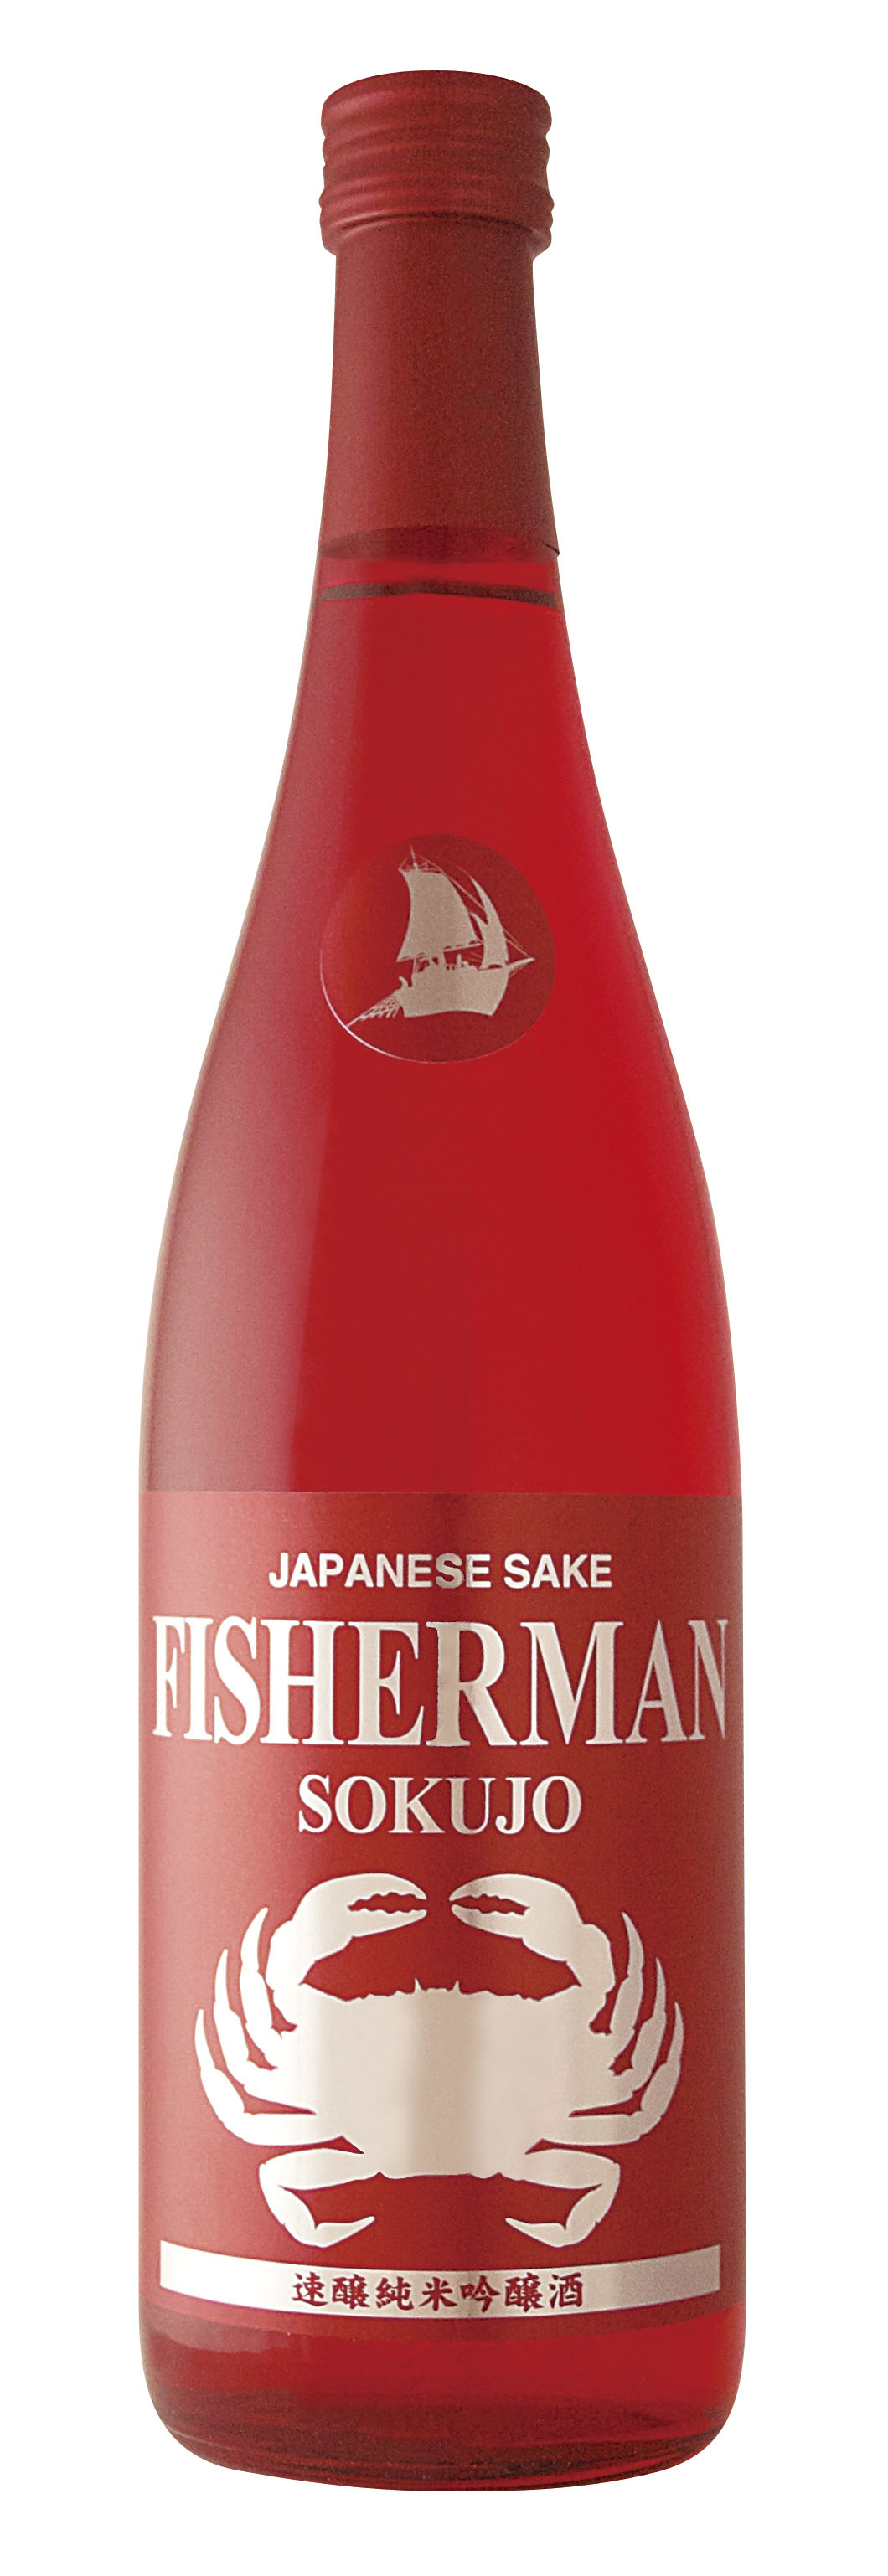 Fisherman sake